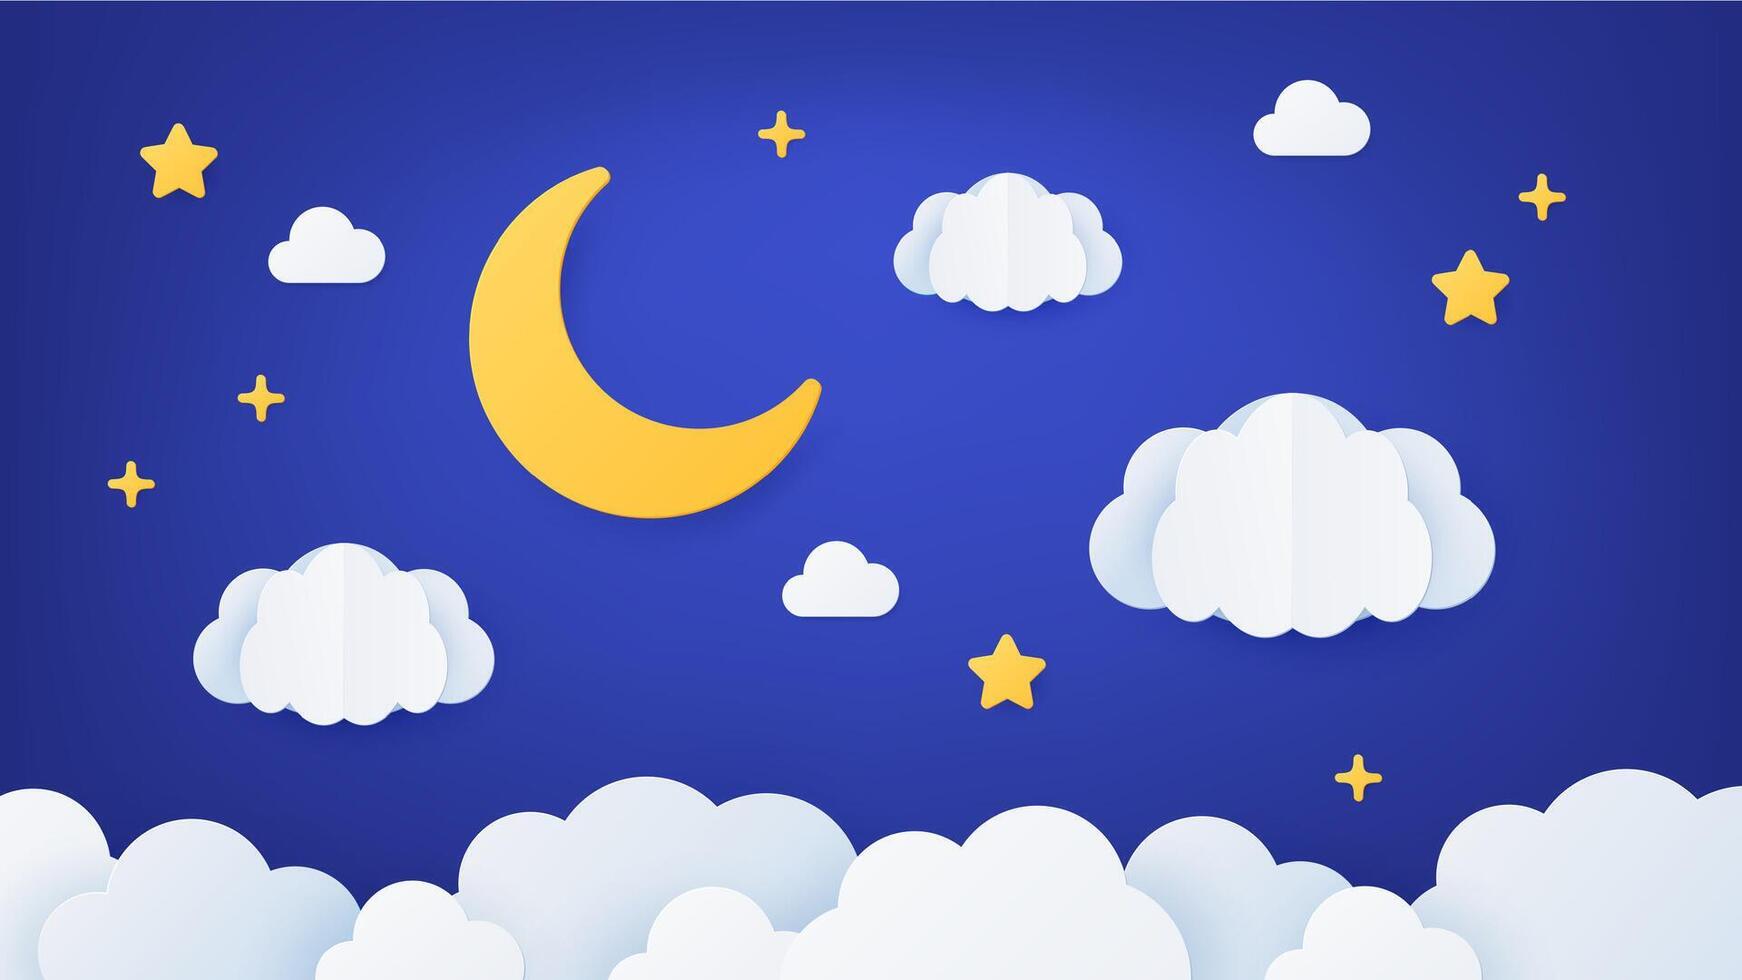 Papier Kunst Nacht Himmel. Origami Traum Landschaft Szene mit Mond, Sterne und Wolken. Papier Schnitt Karikatur Dekoration zum Baby schlafen, Vektor Konzept